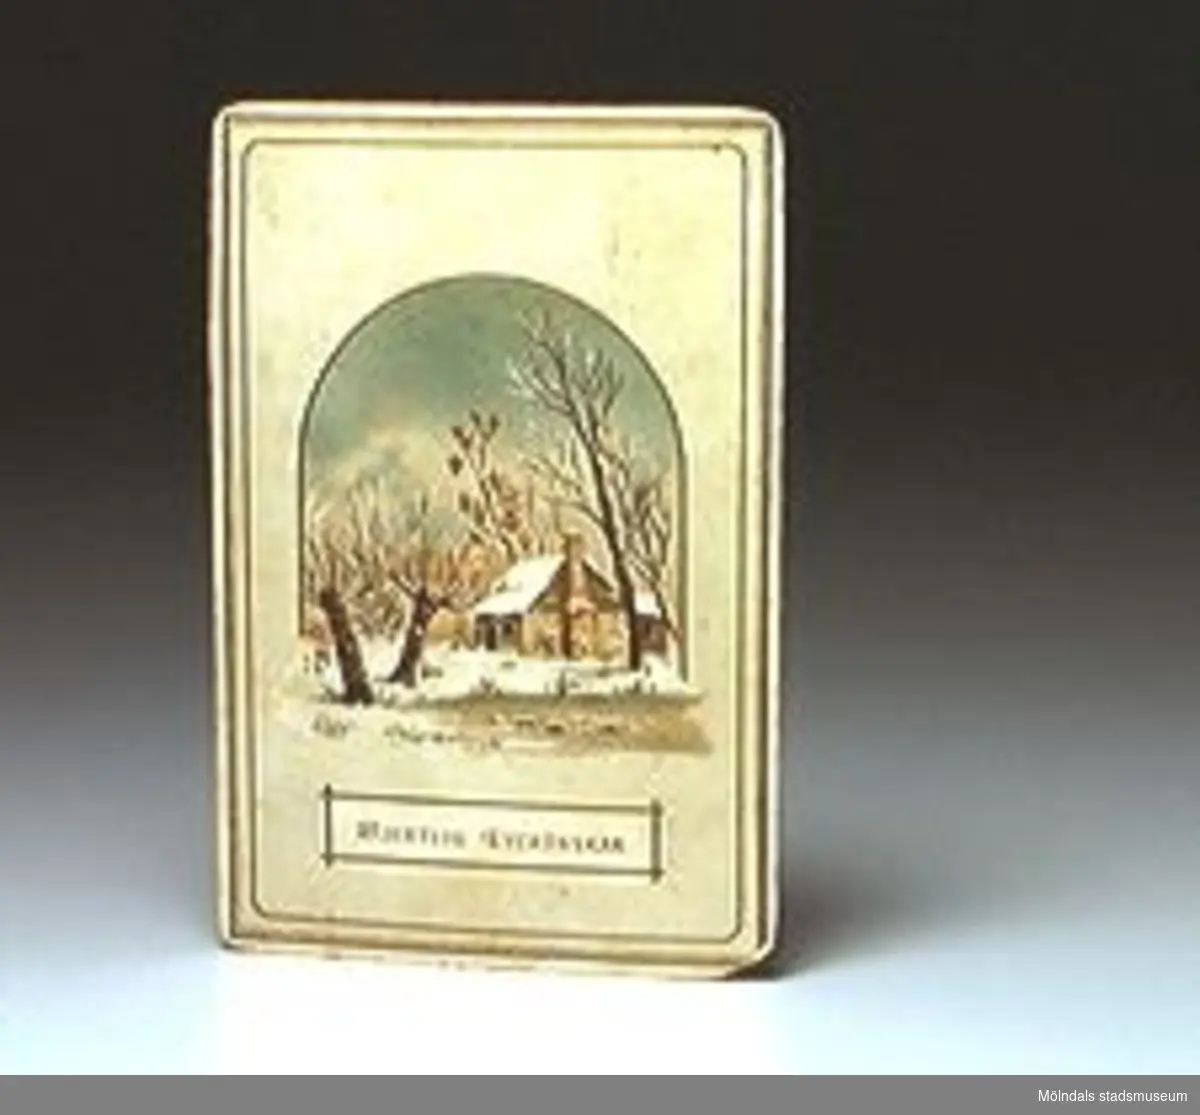 Gratulationskort med bild av snötäckt trädgård med litet hus. Tryckt text på framsidan: "HJERTLIG LYCKÖNSKAN". Minne af J Lundberg till Godtfrid. Signering i bläck på baksidan.